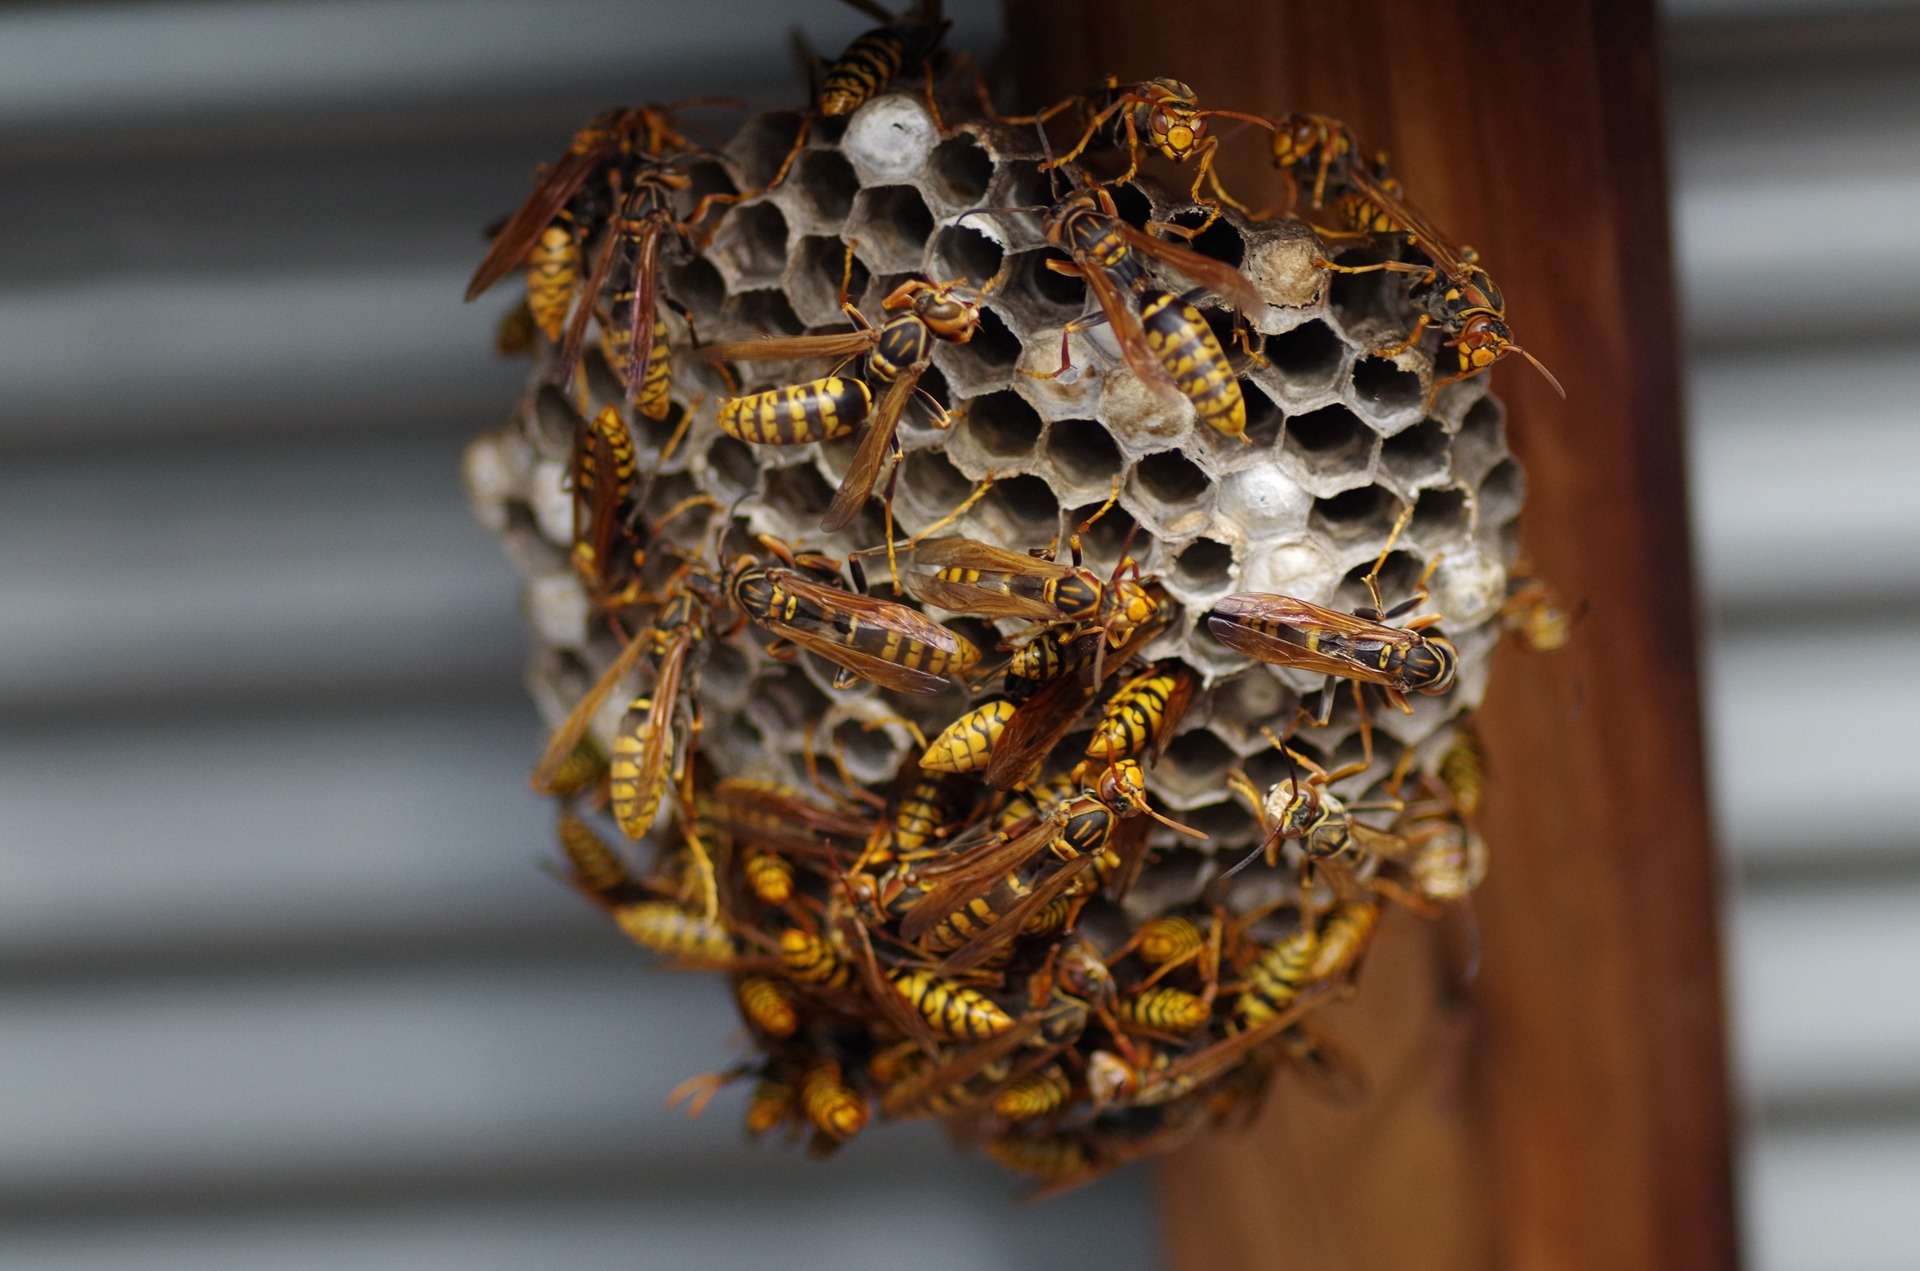  蜂の巣の駆除